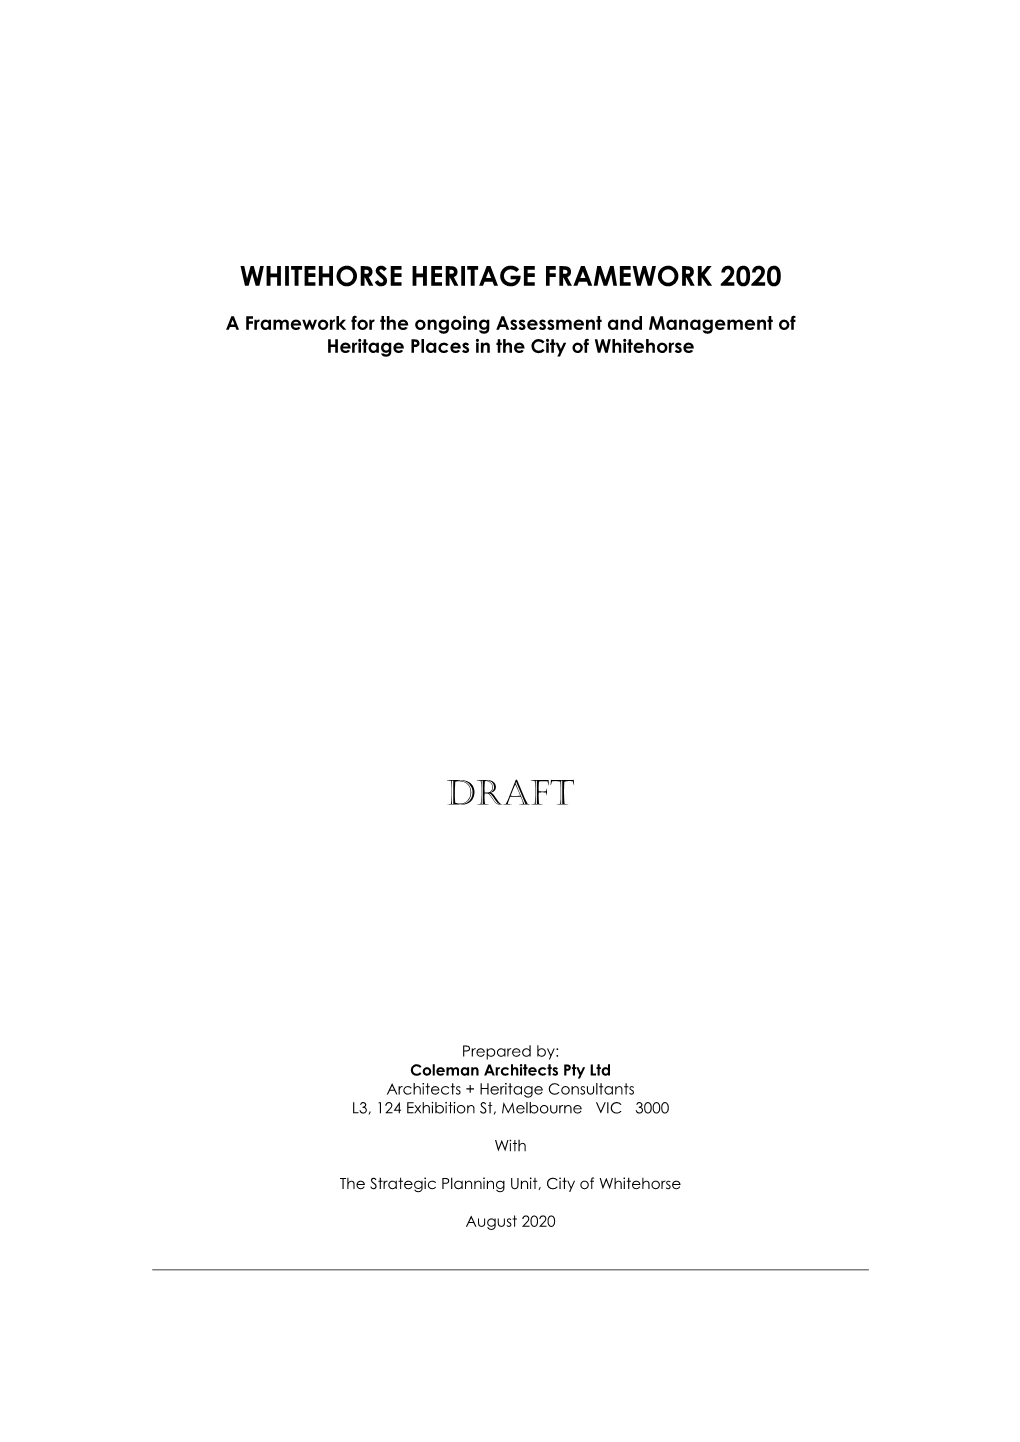 Item 9.1.2 Heritage Framework Plan 2020